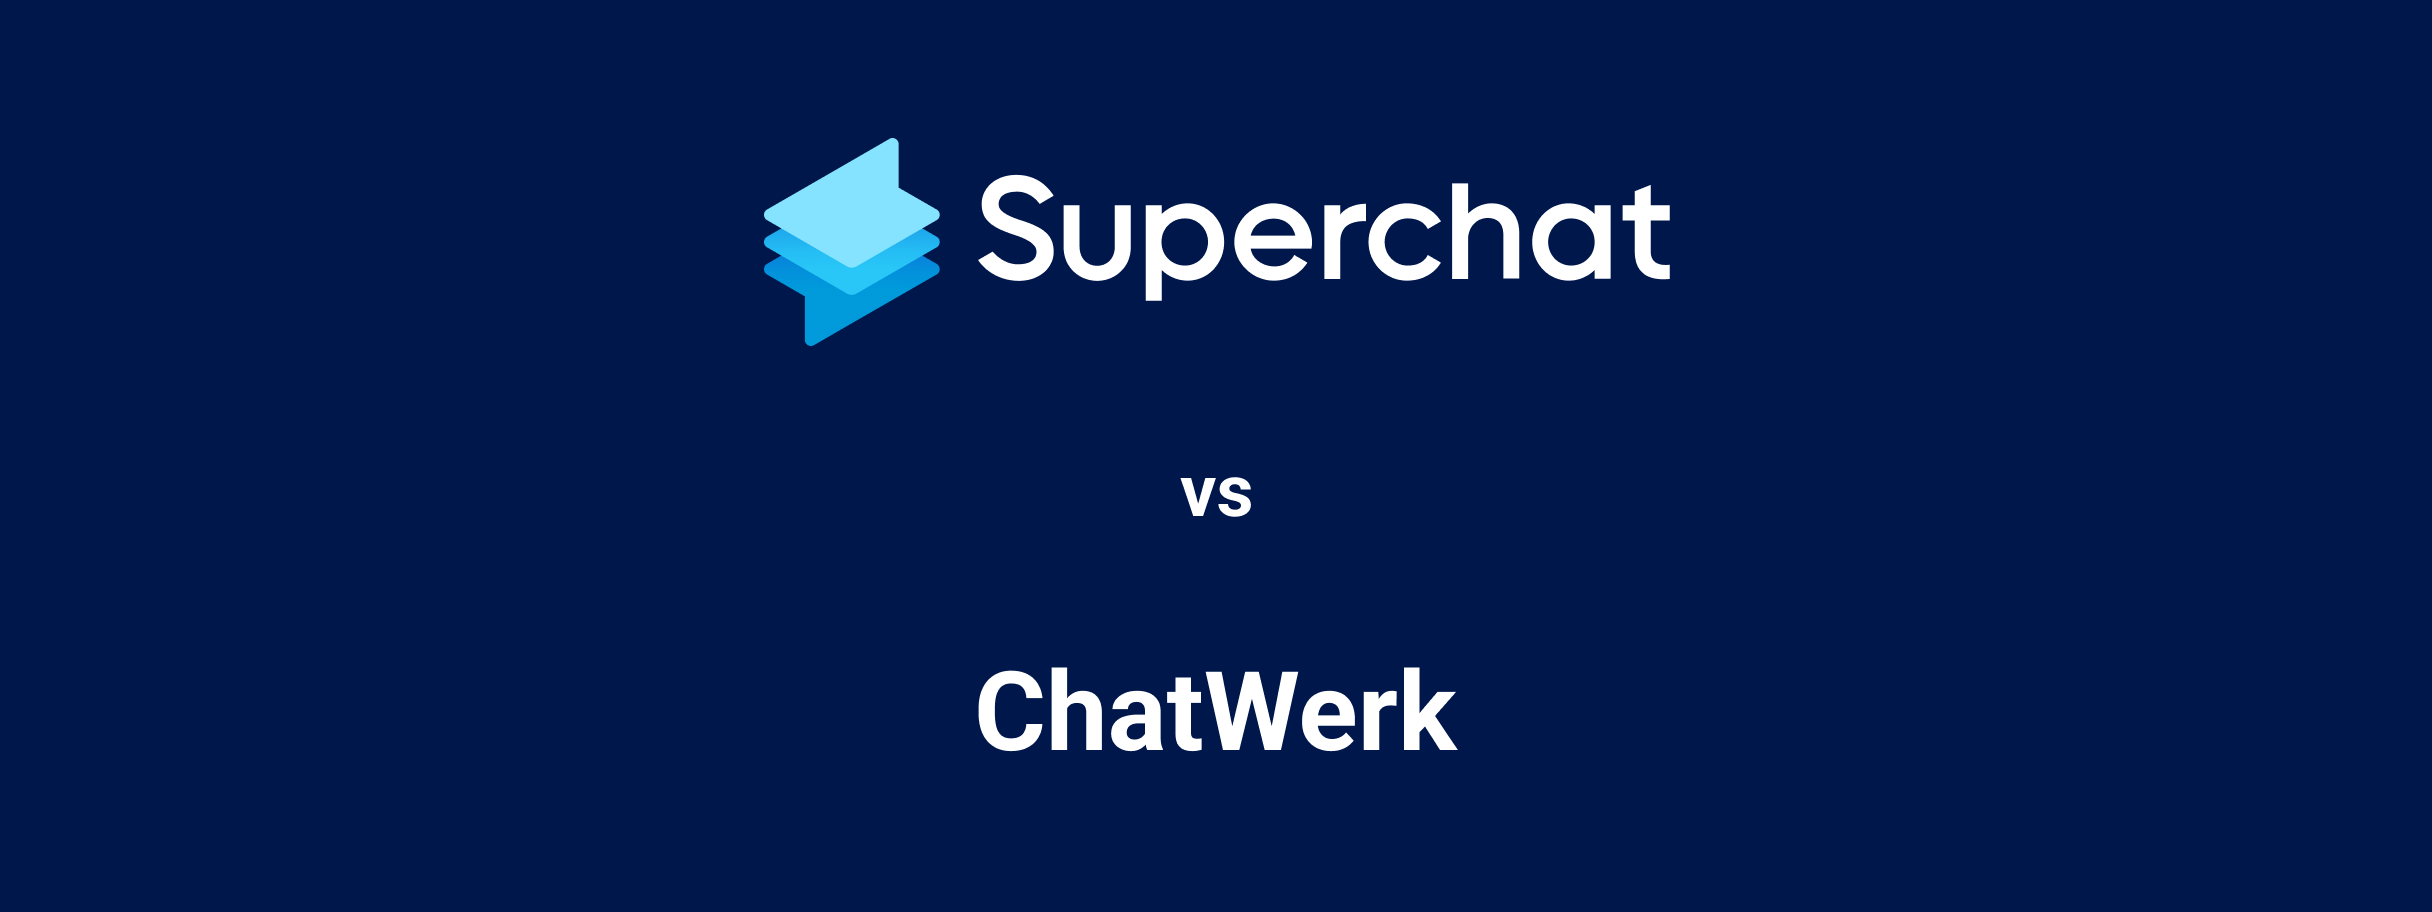 Superchat Vergleich - ChatWerk Alternative Hero